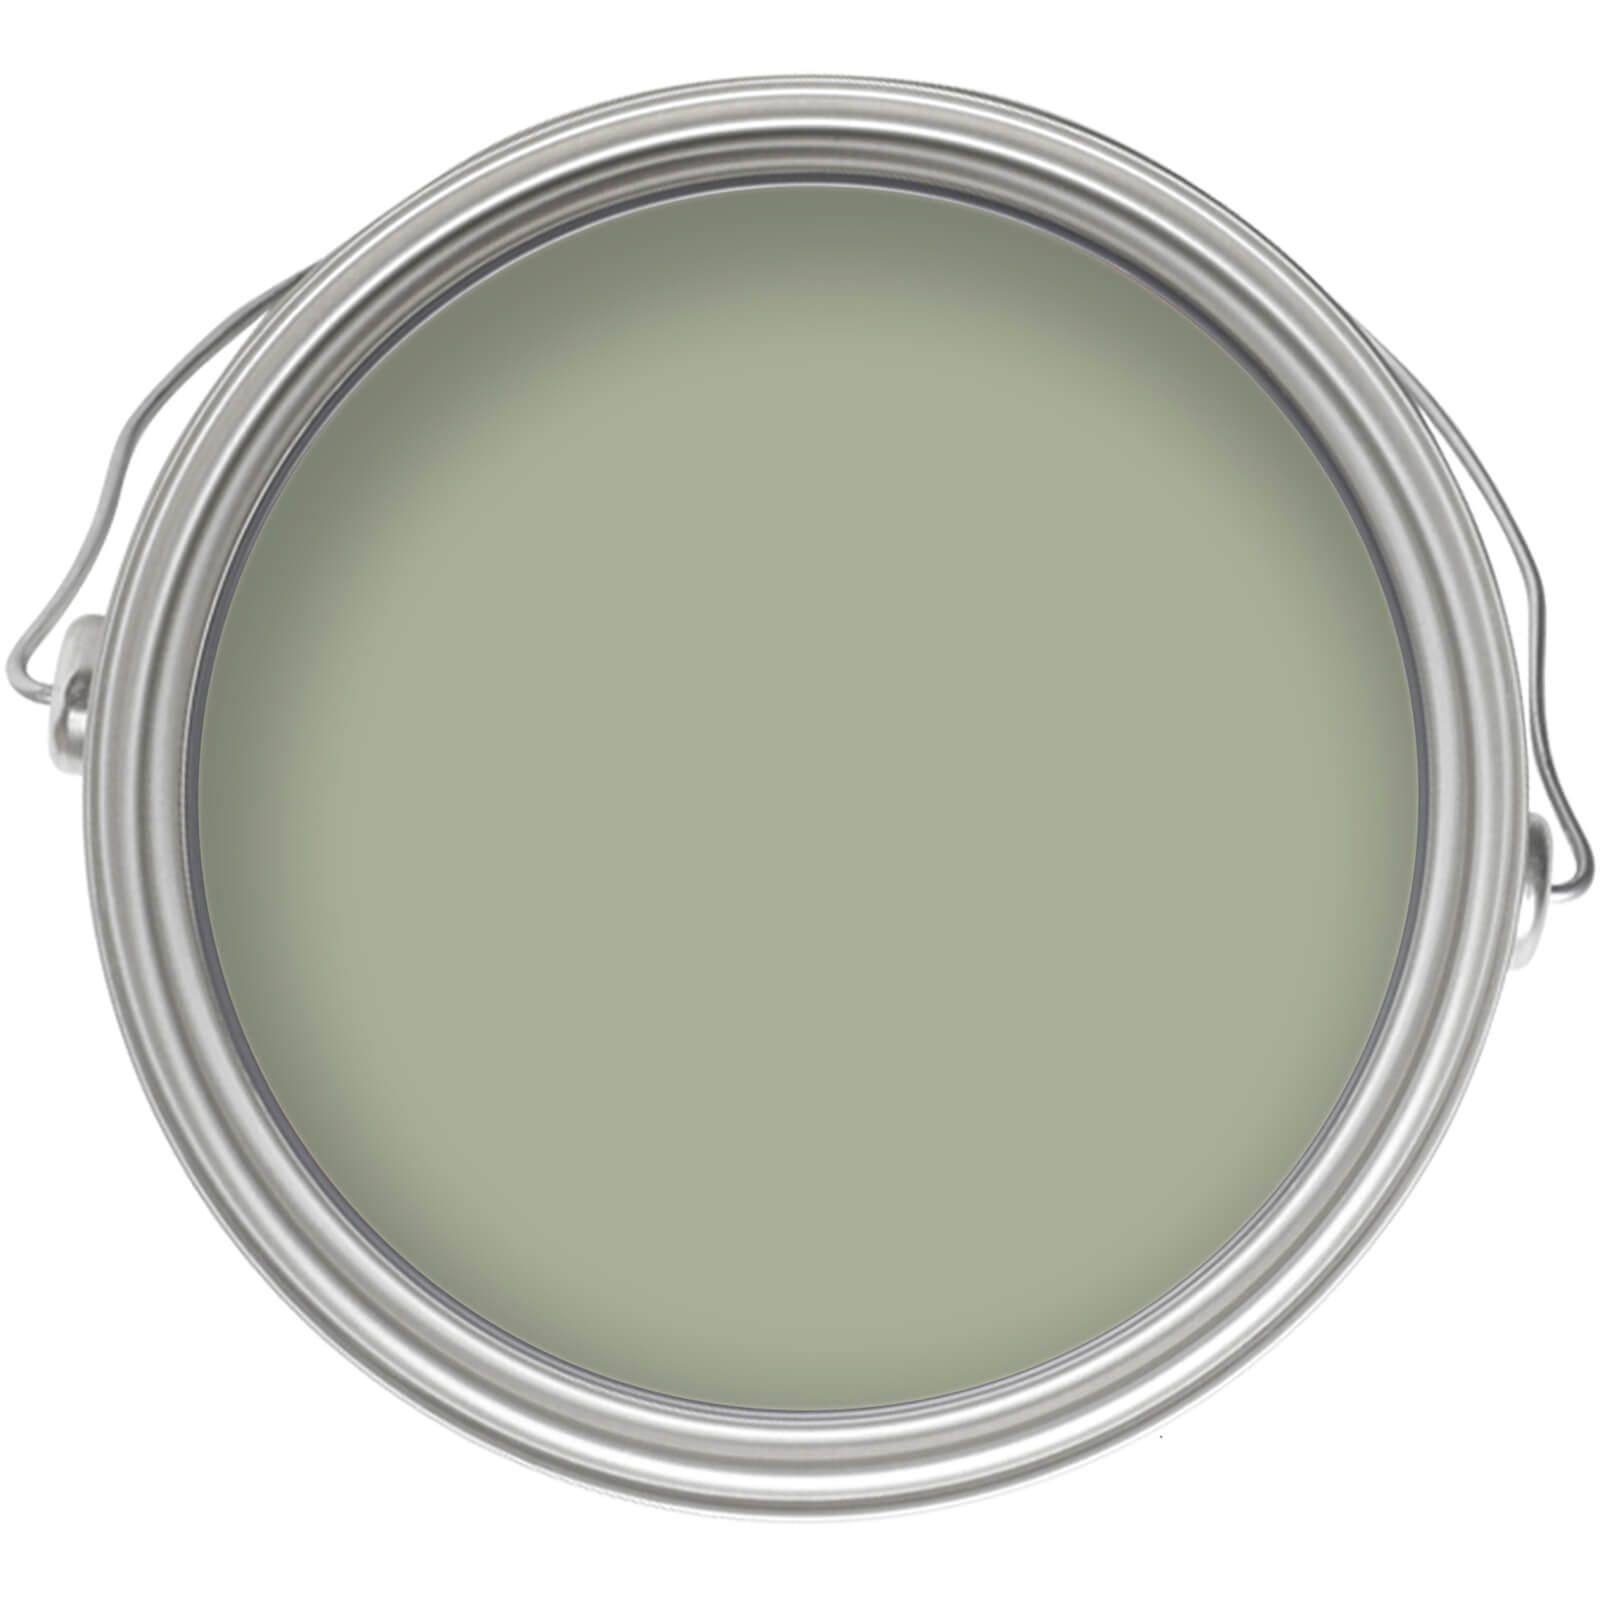 Homebase Matt Emulsion Paint Pale Olive - Tester 90ml